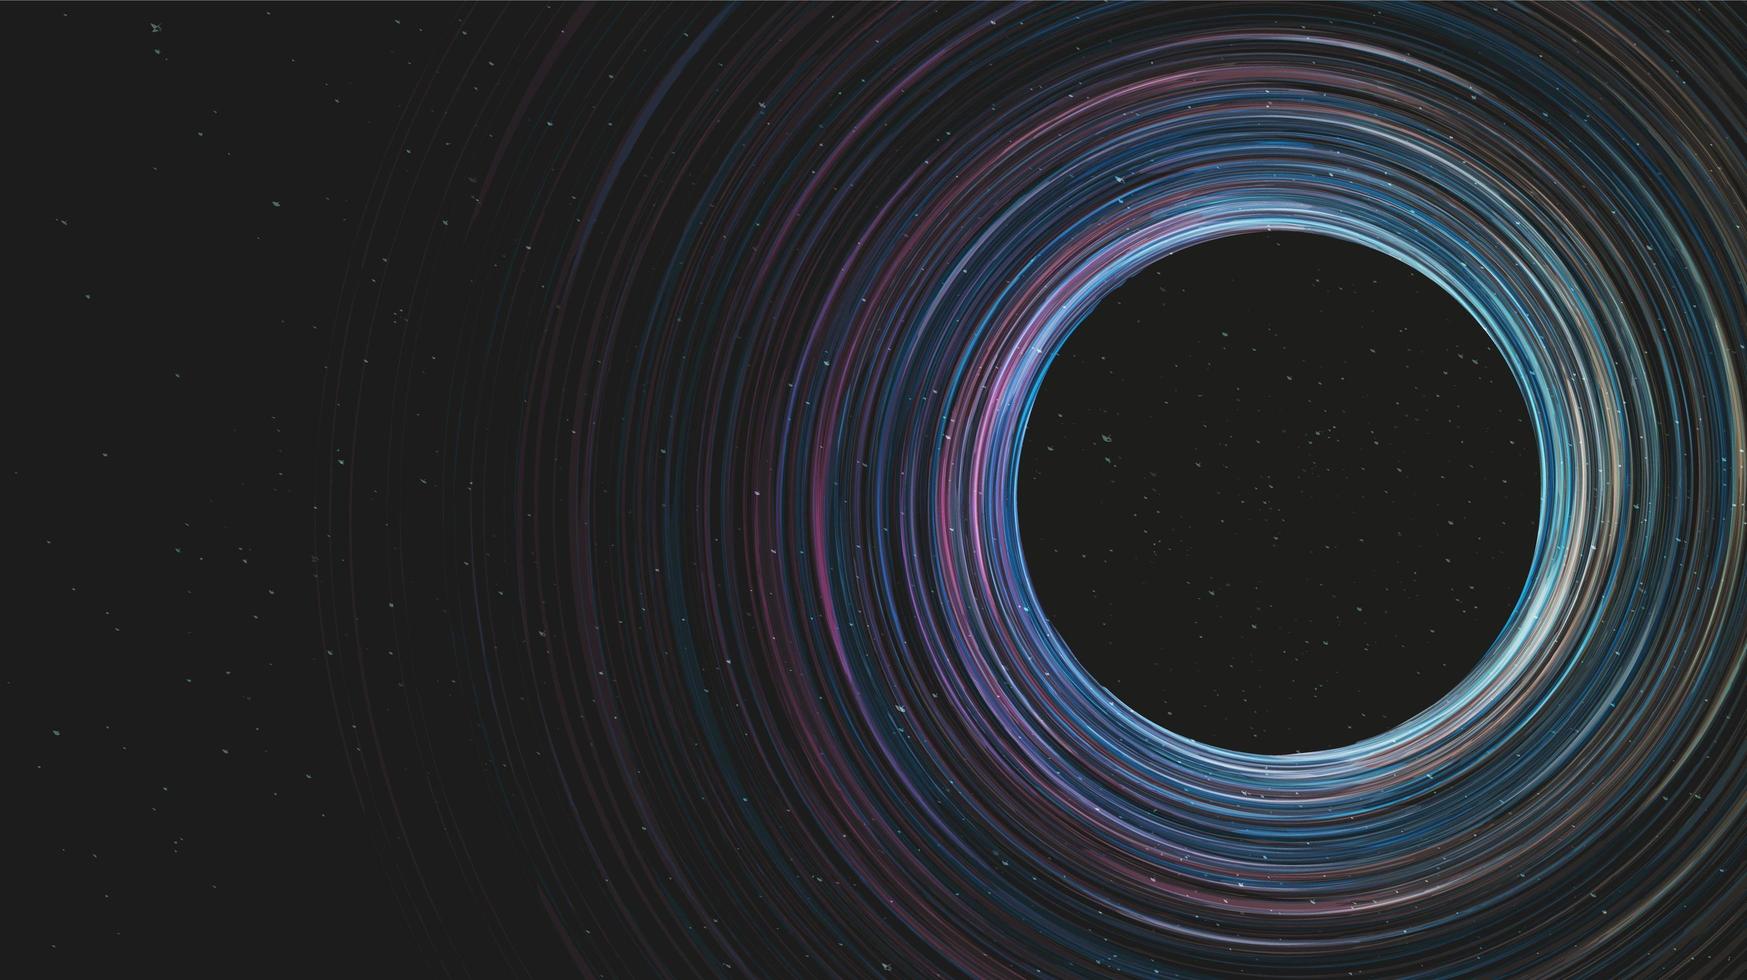 Agujero negro espiral oscuro en el fondo de la galaxia.Diseño de concepto de planeta y física, ilustración vectorial. vector